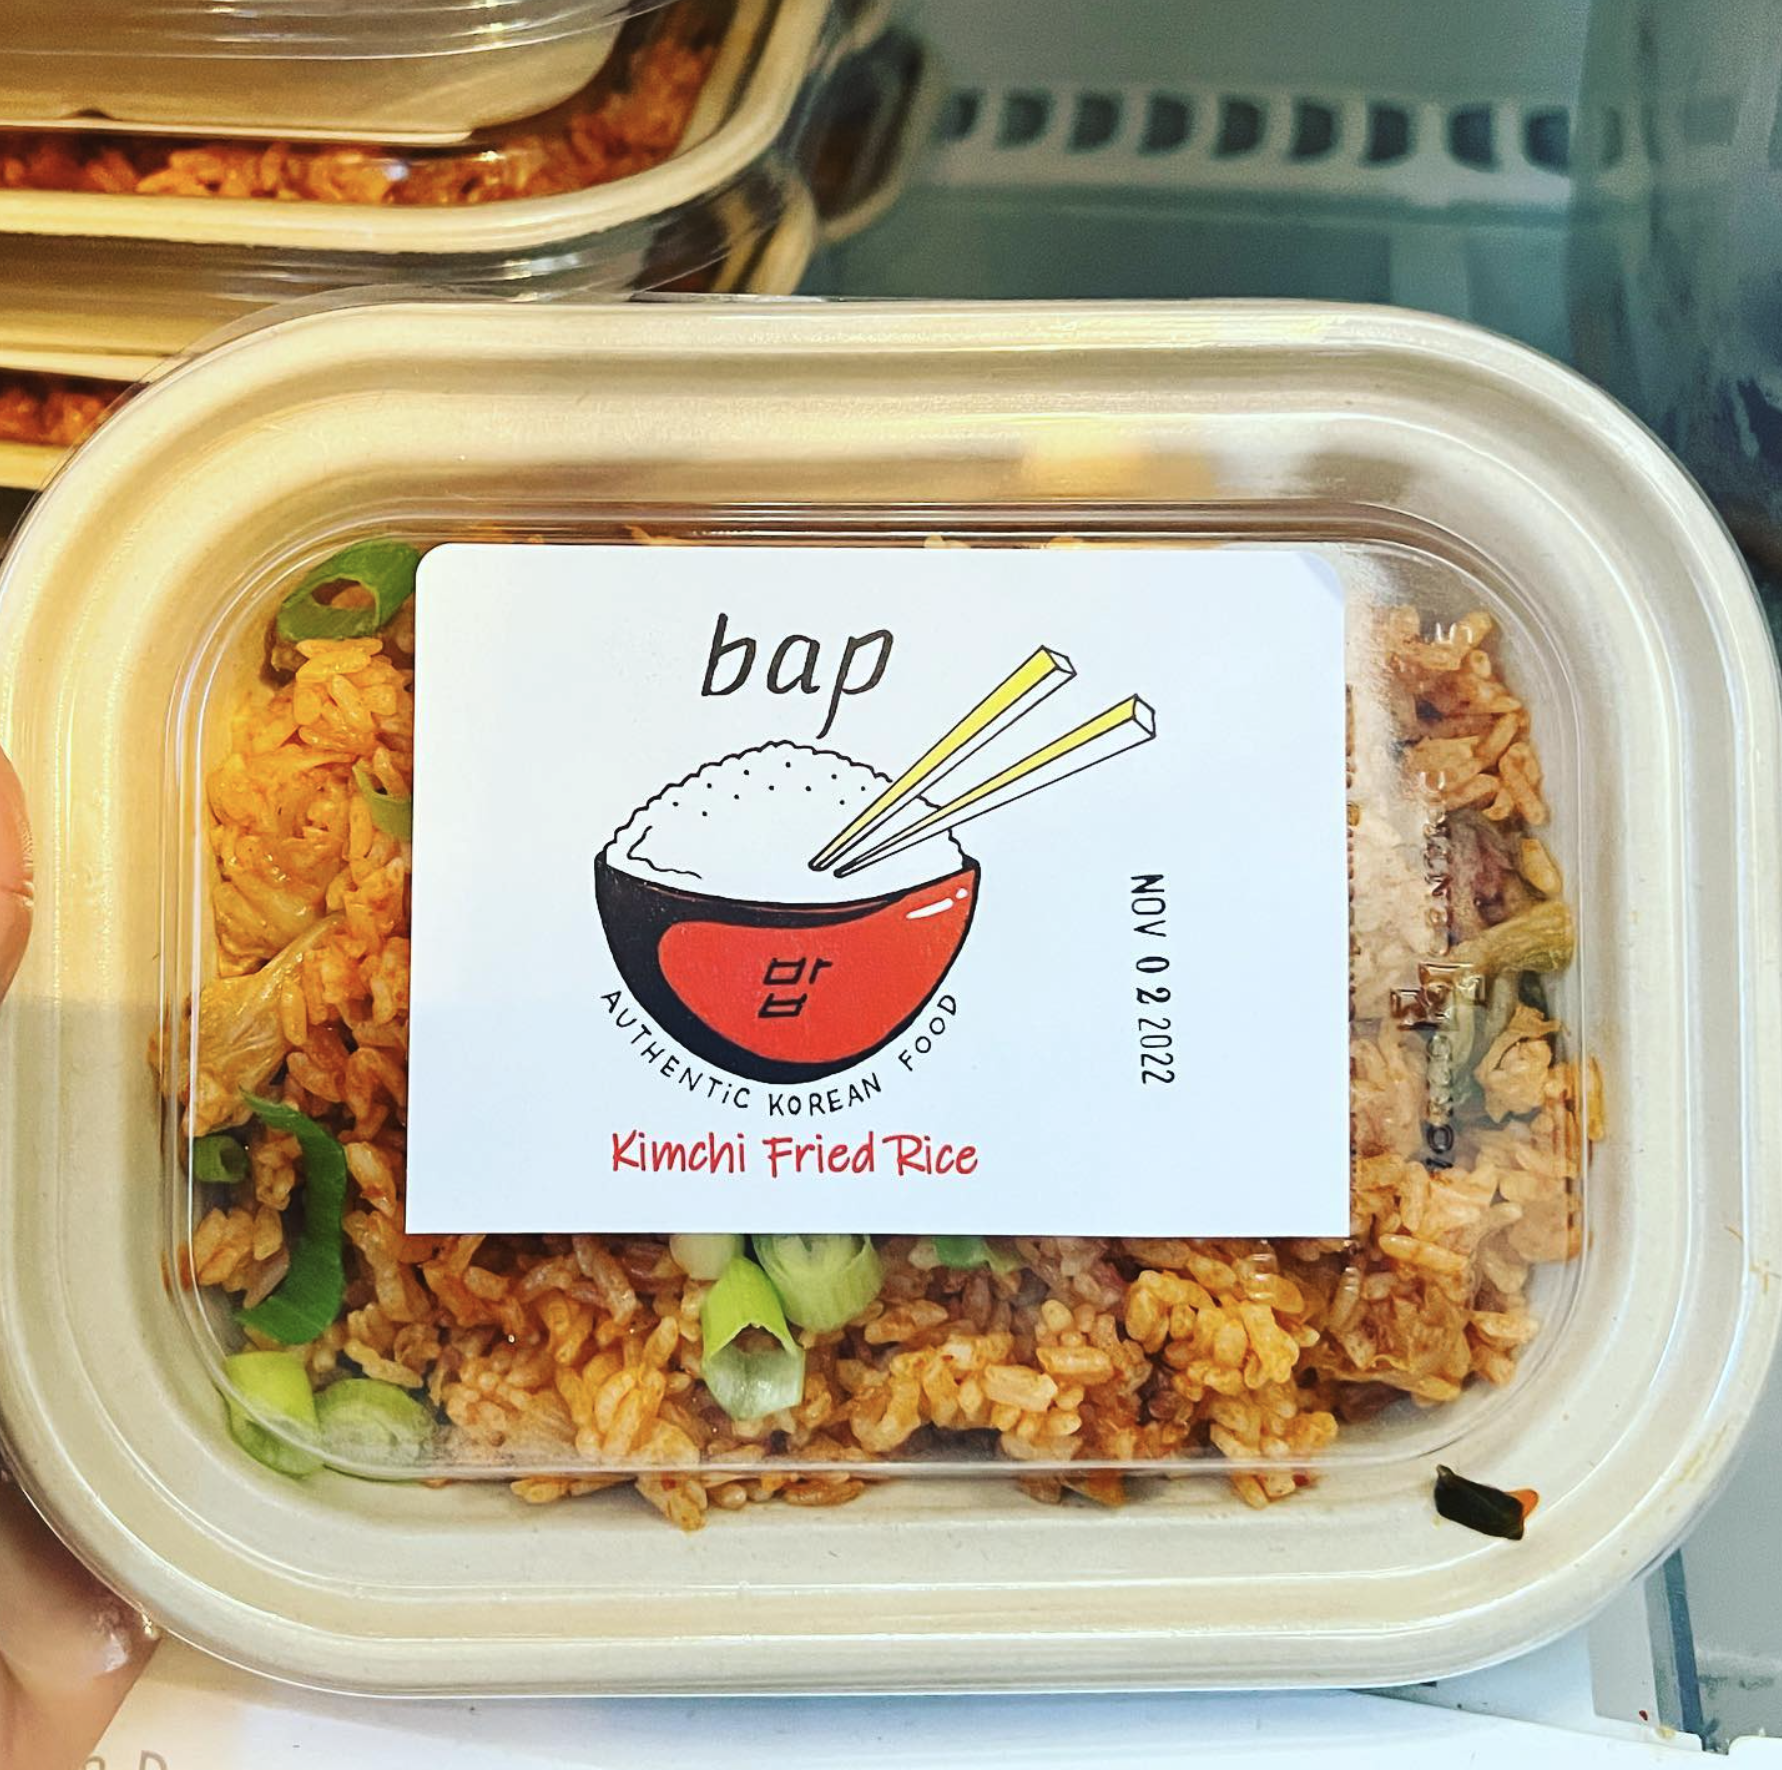 Bap Korean Food Package